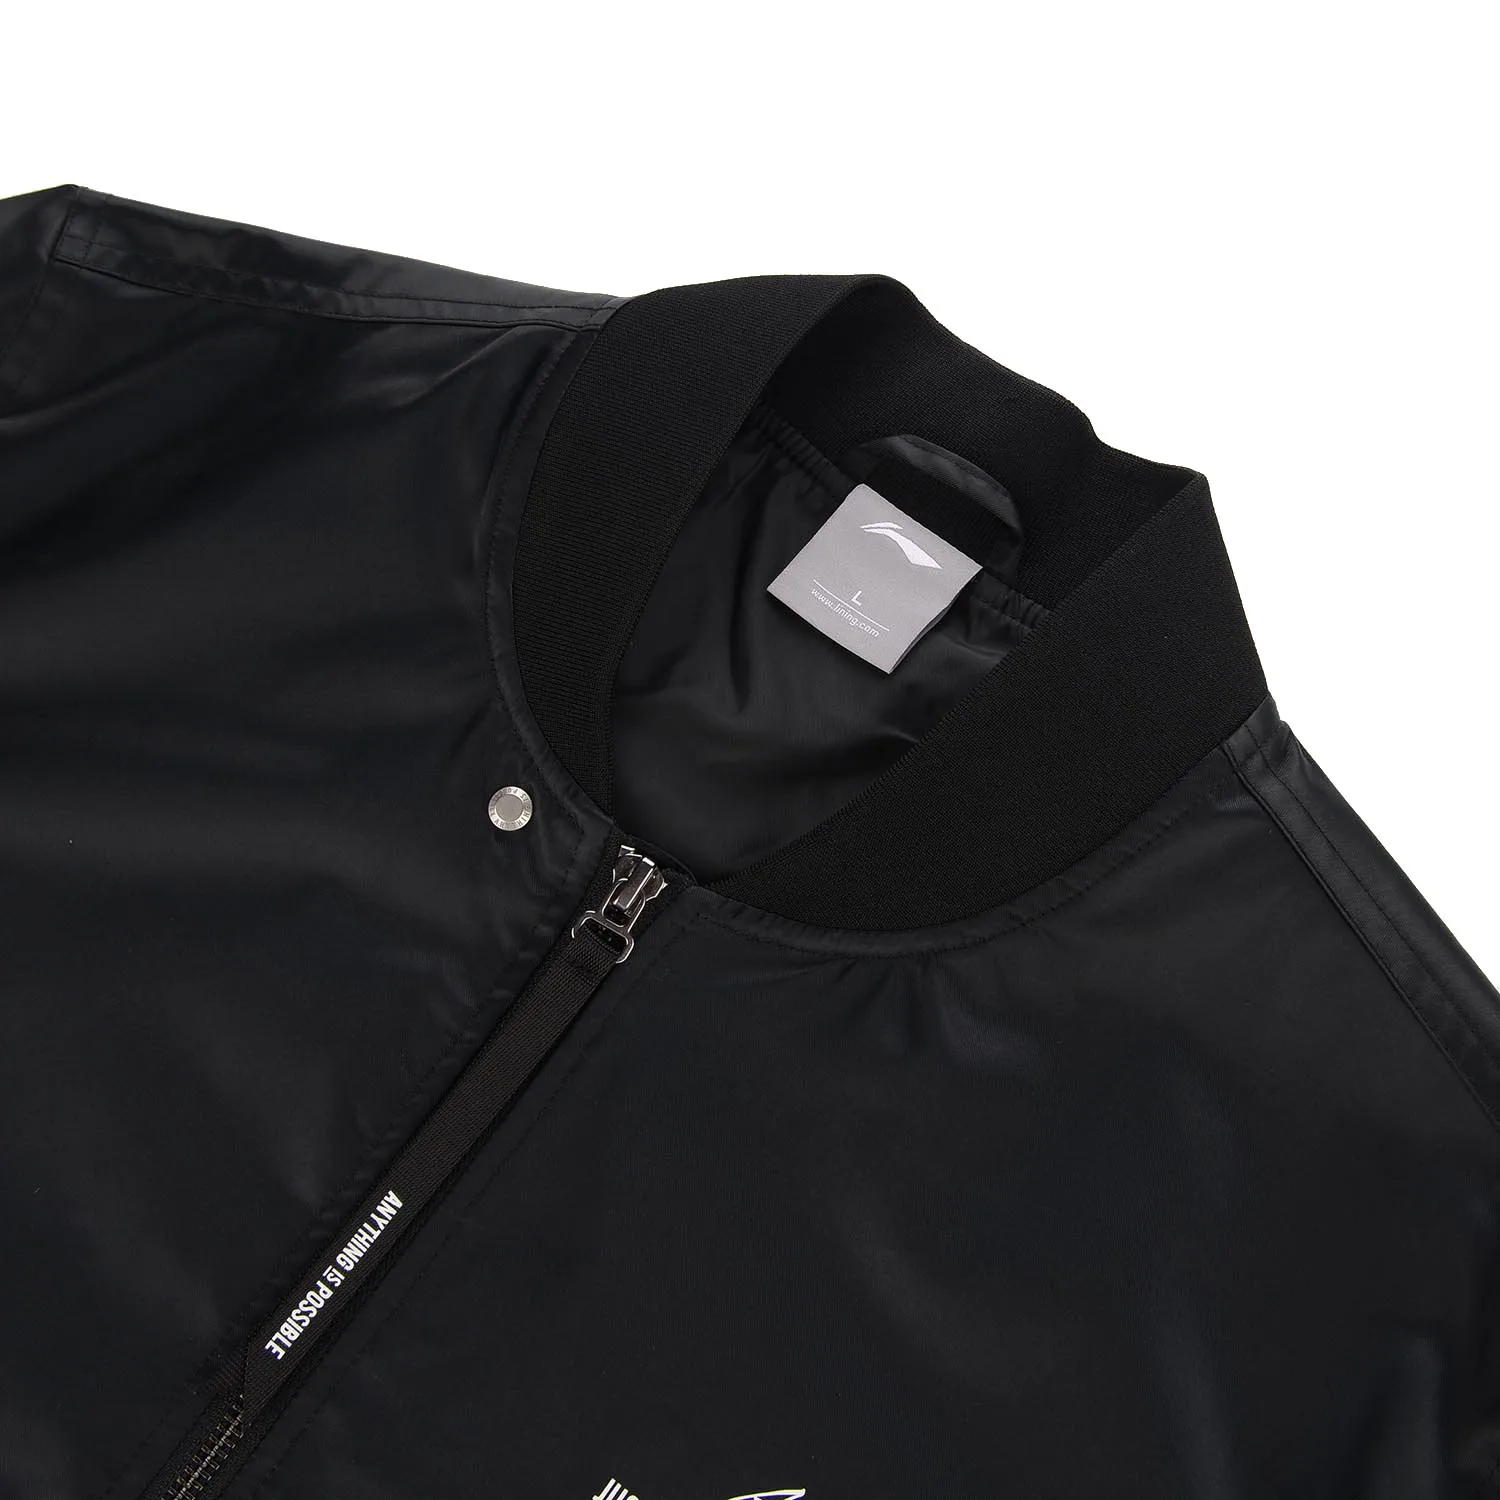 Li-Ning Мужская трендовая спортивная куртка, обычная посадка, полиэстер, застежка-молния, подкладка, спортивные пальто, AJDN151 MWJ2571